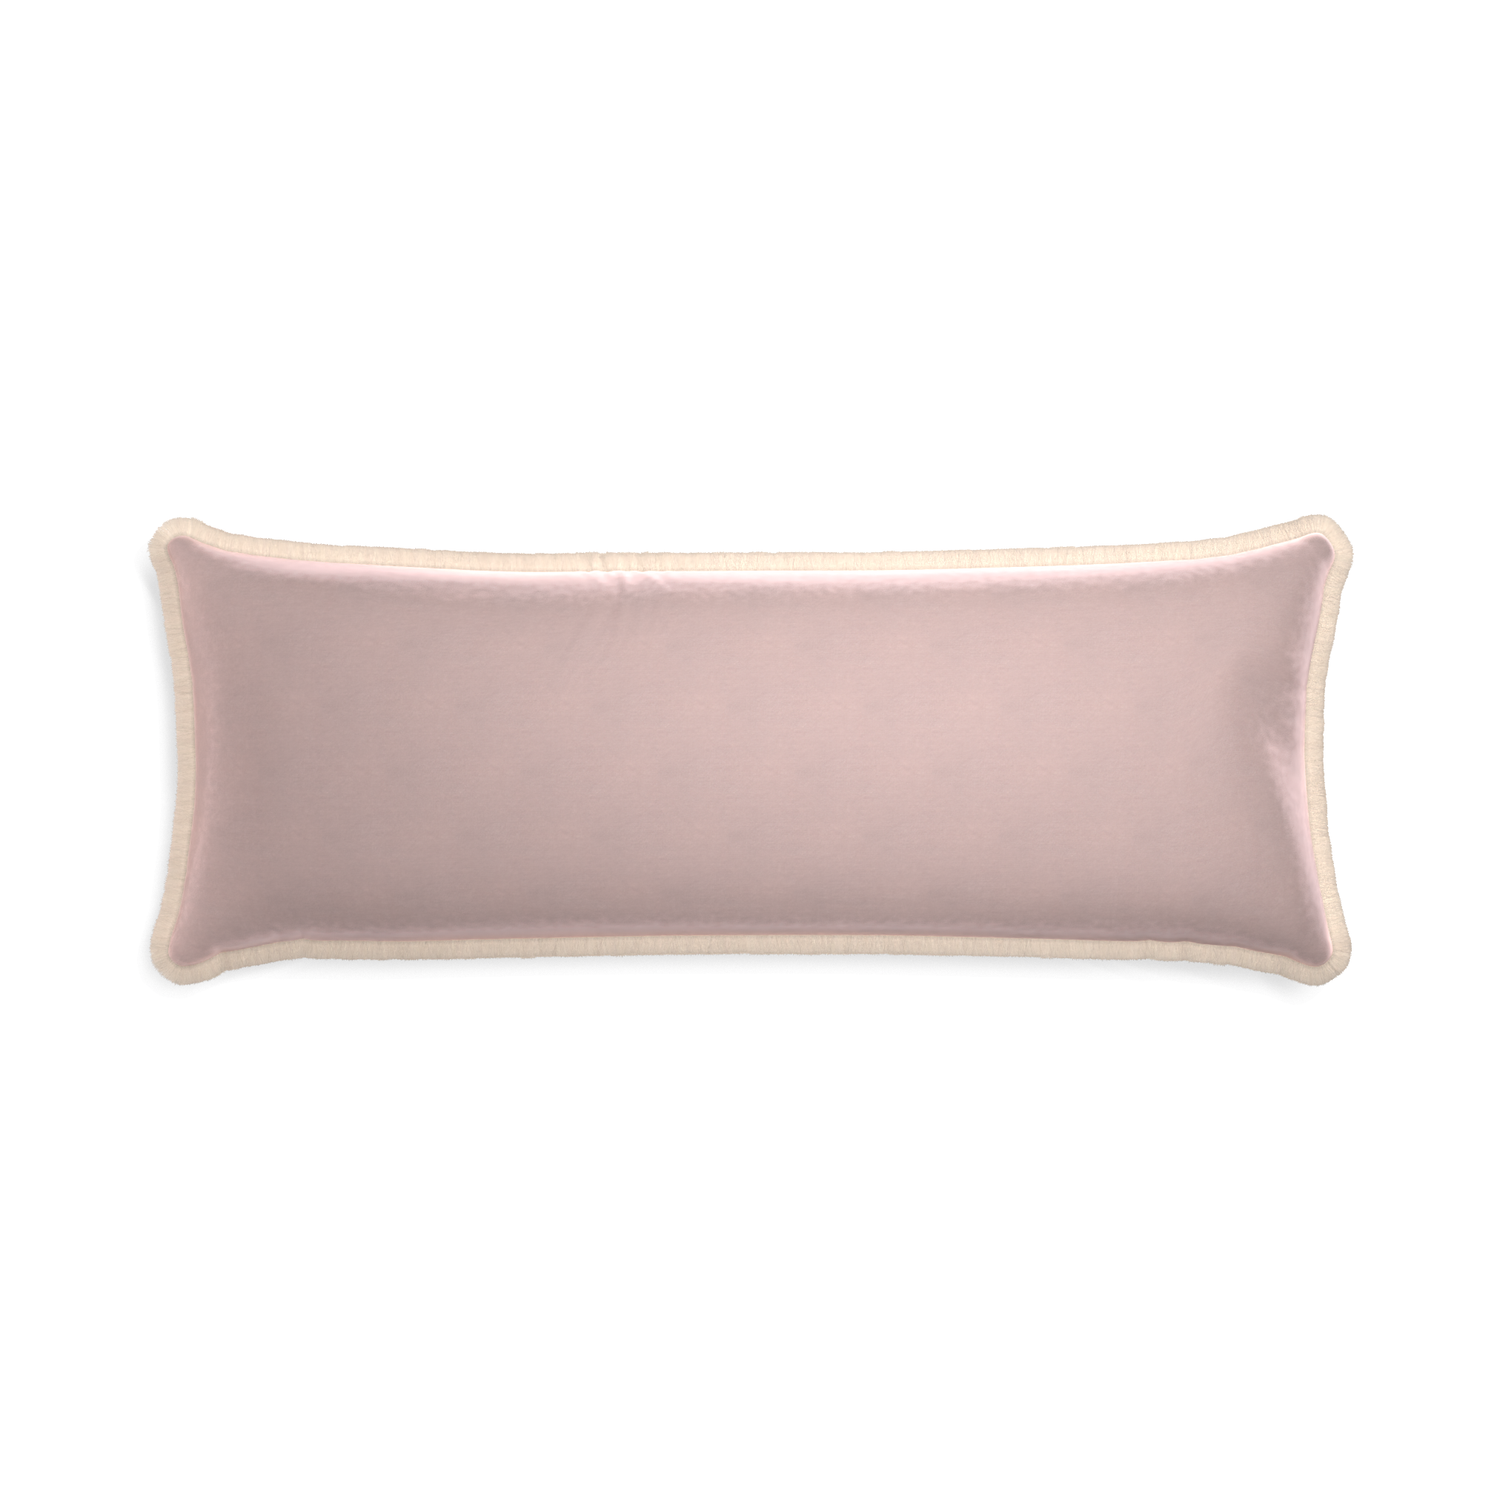 Xl-lumbar rose velvet custom pillow with cream fringe on white background